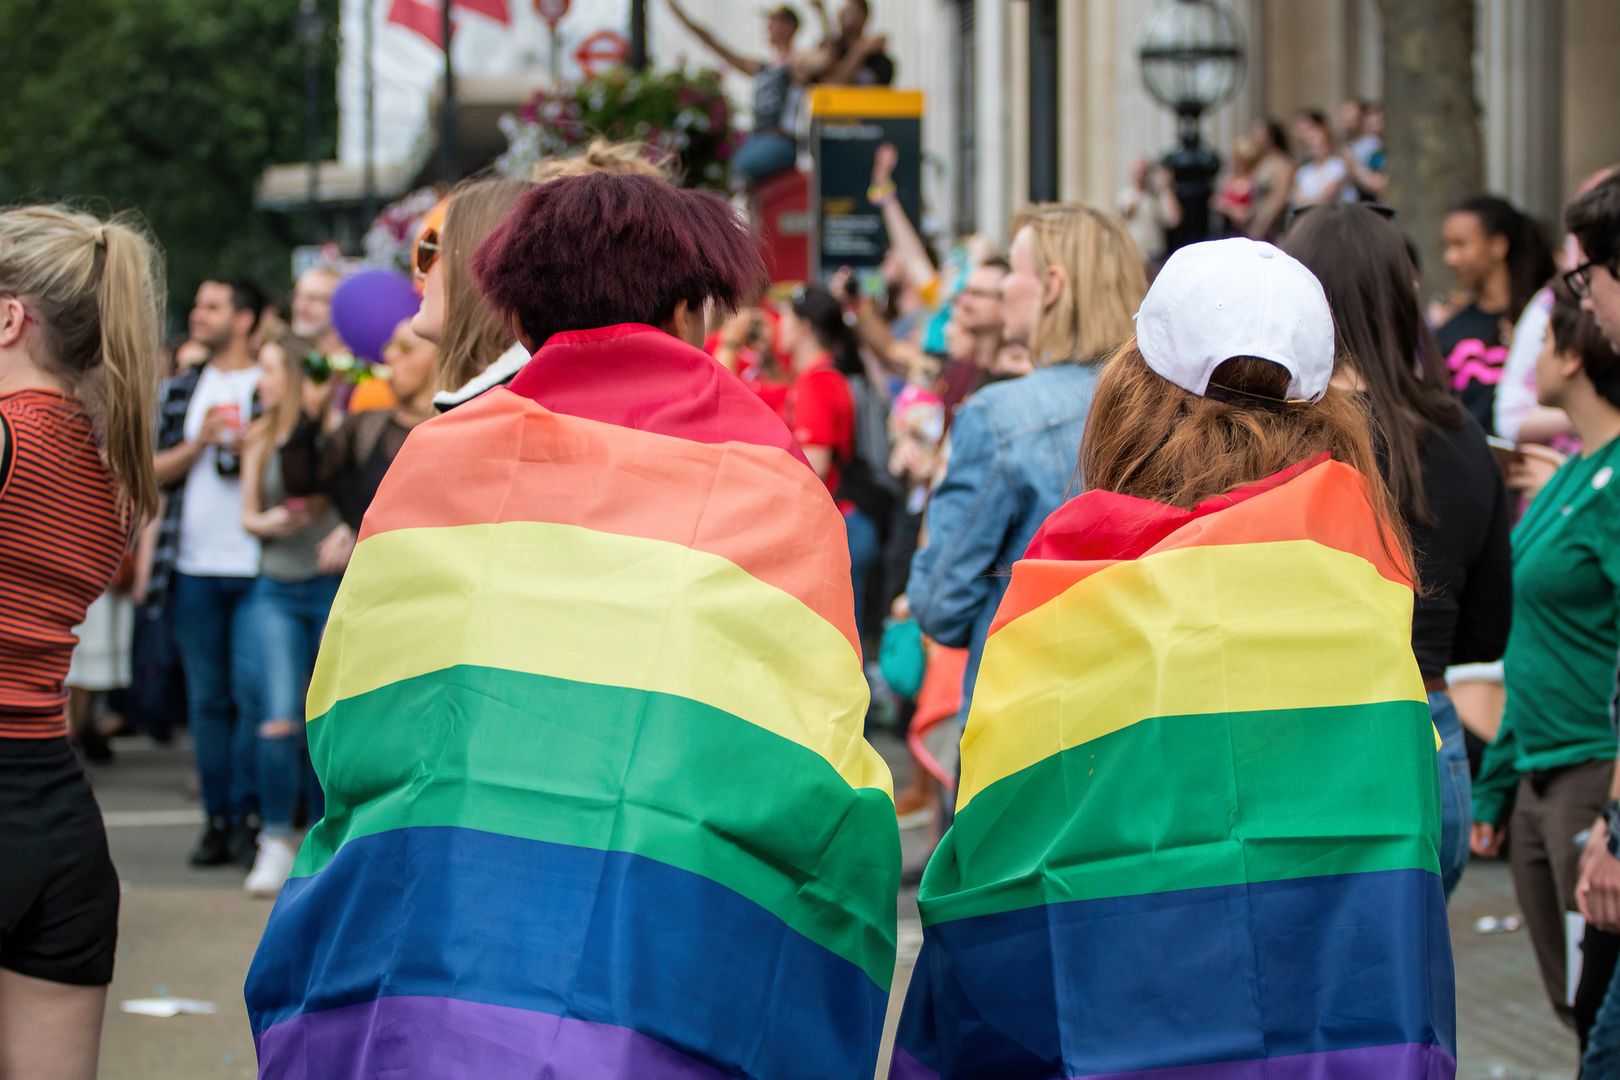 Austria zezwala na śluby gejów. Kolejny kraj w Europie zmienia prawo